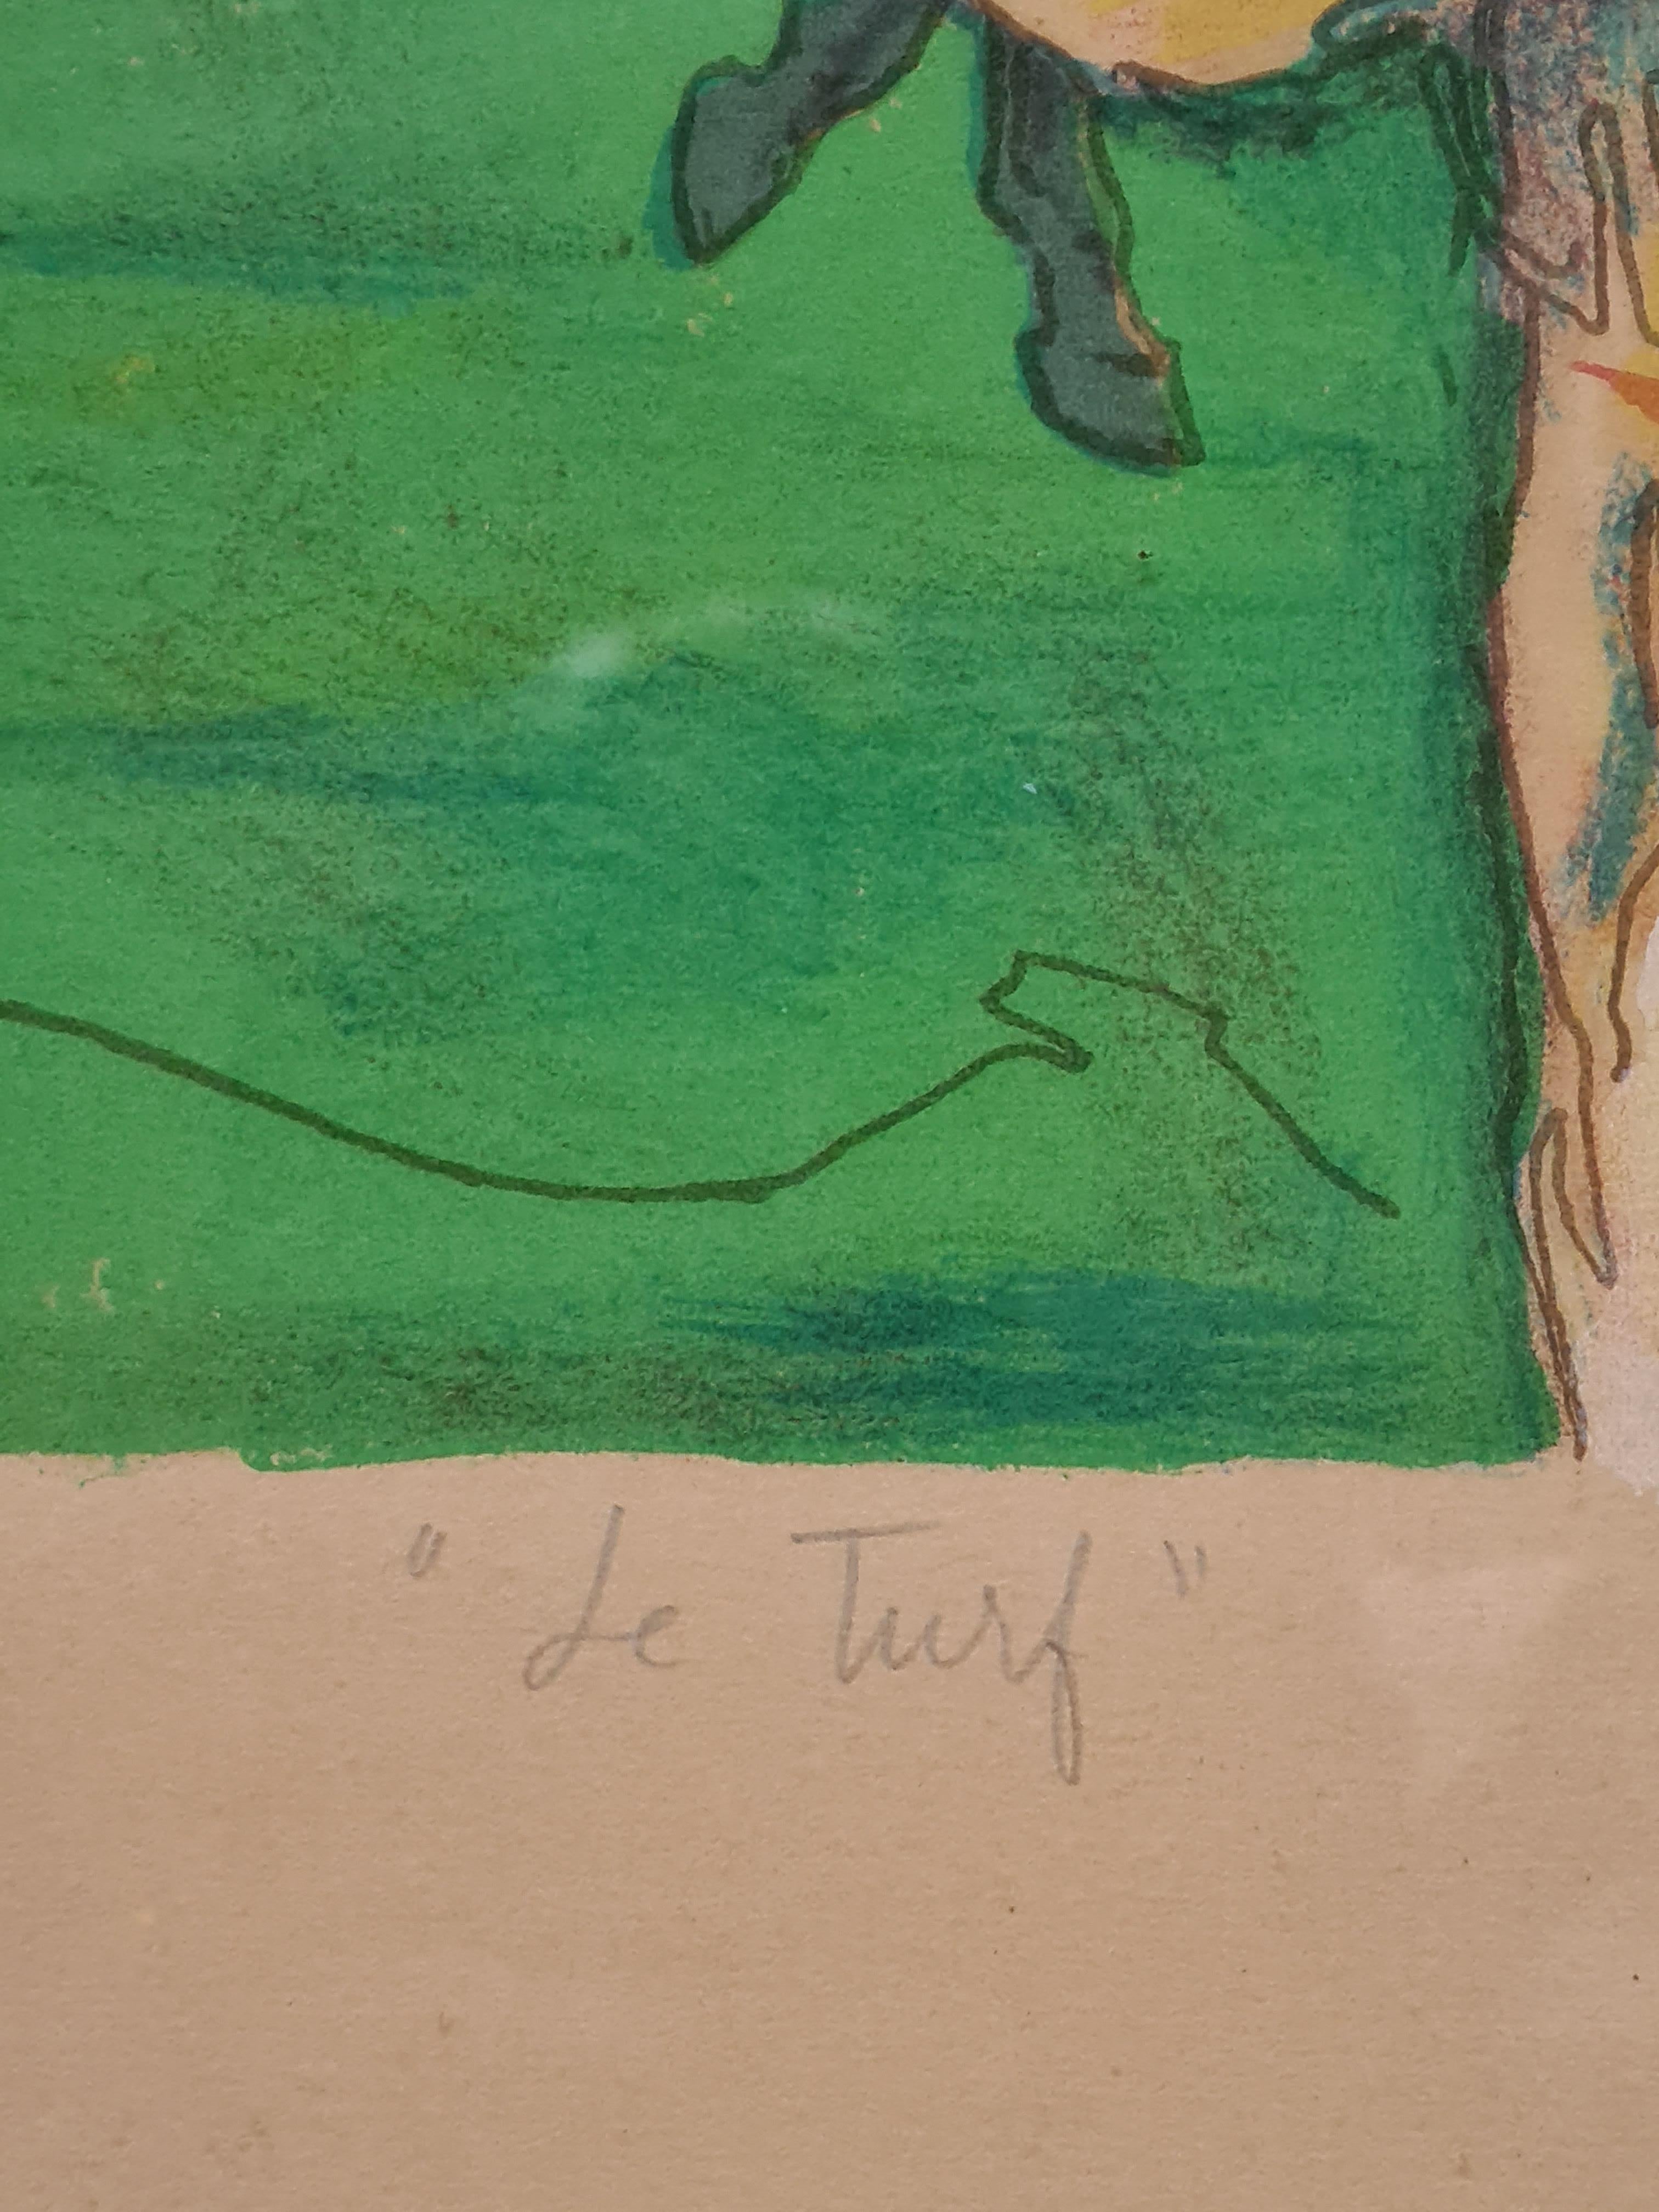 Une édition limitée sur papier numérotée 96 sur 175 d'un hippodrome par Henri Laville. Signée au crayon en bas à droite, titrée au crayon en bas au centre et numérotée au crayon en bas à gauche. Présenté dans un cadre en bois uni sous